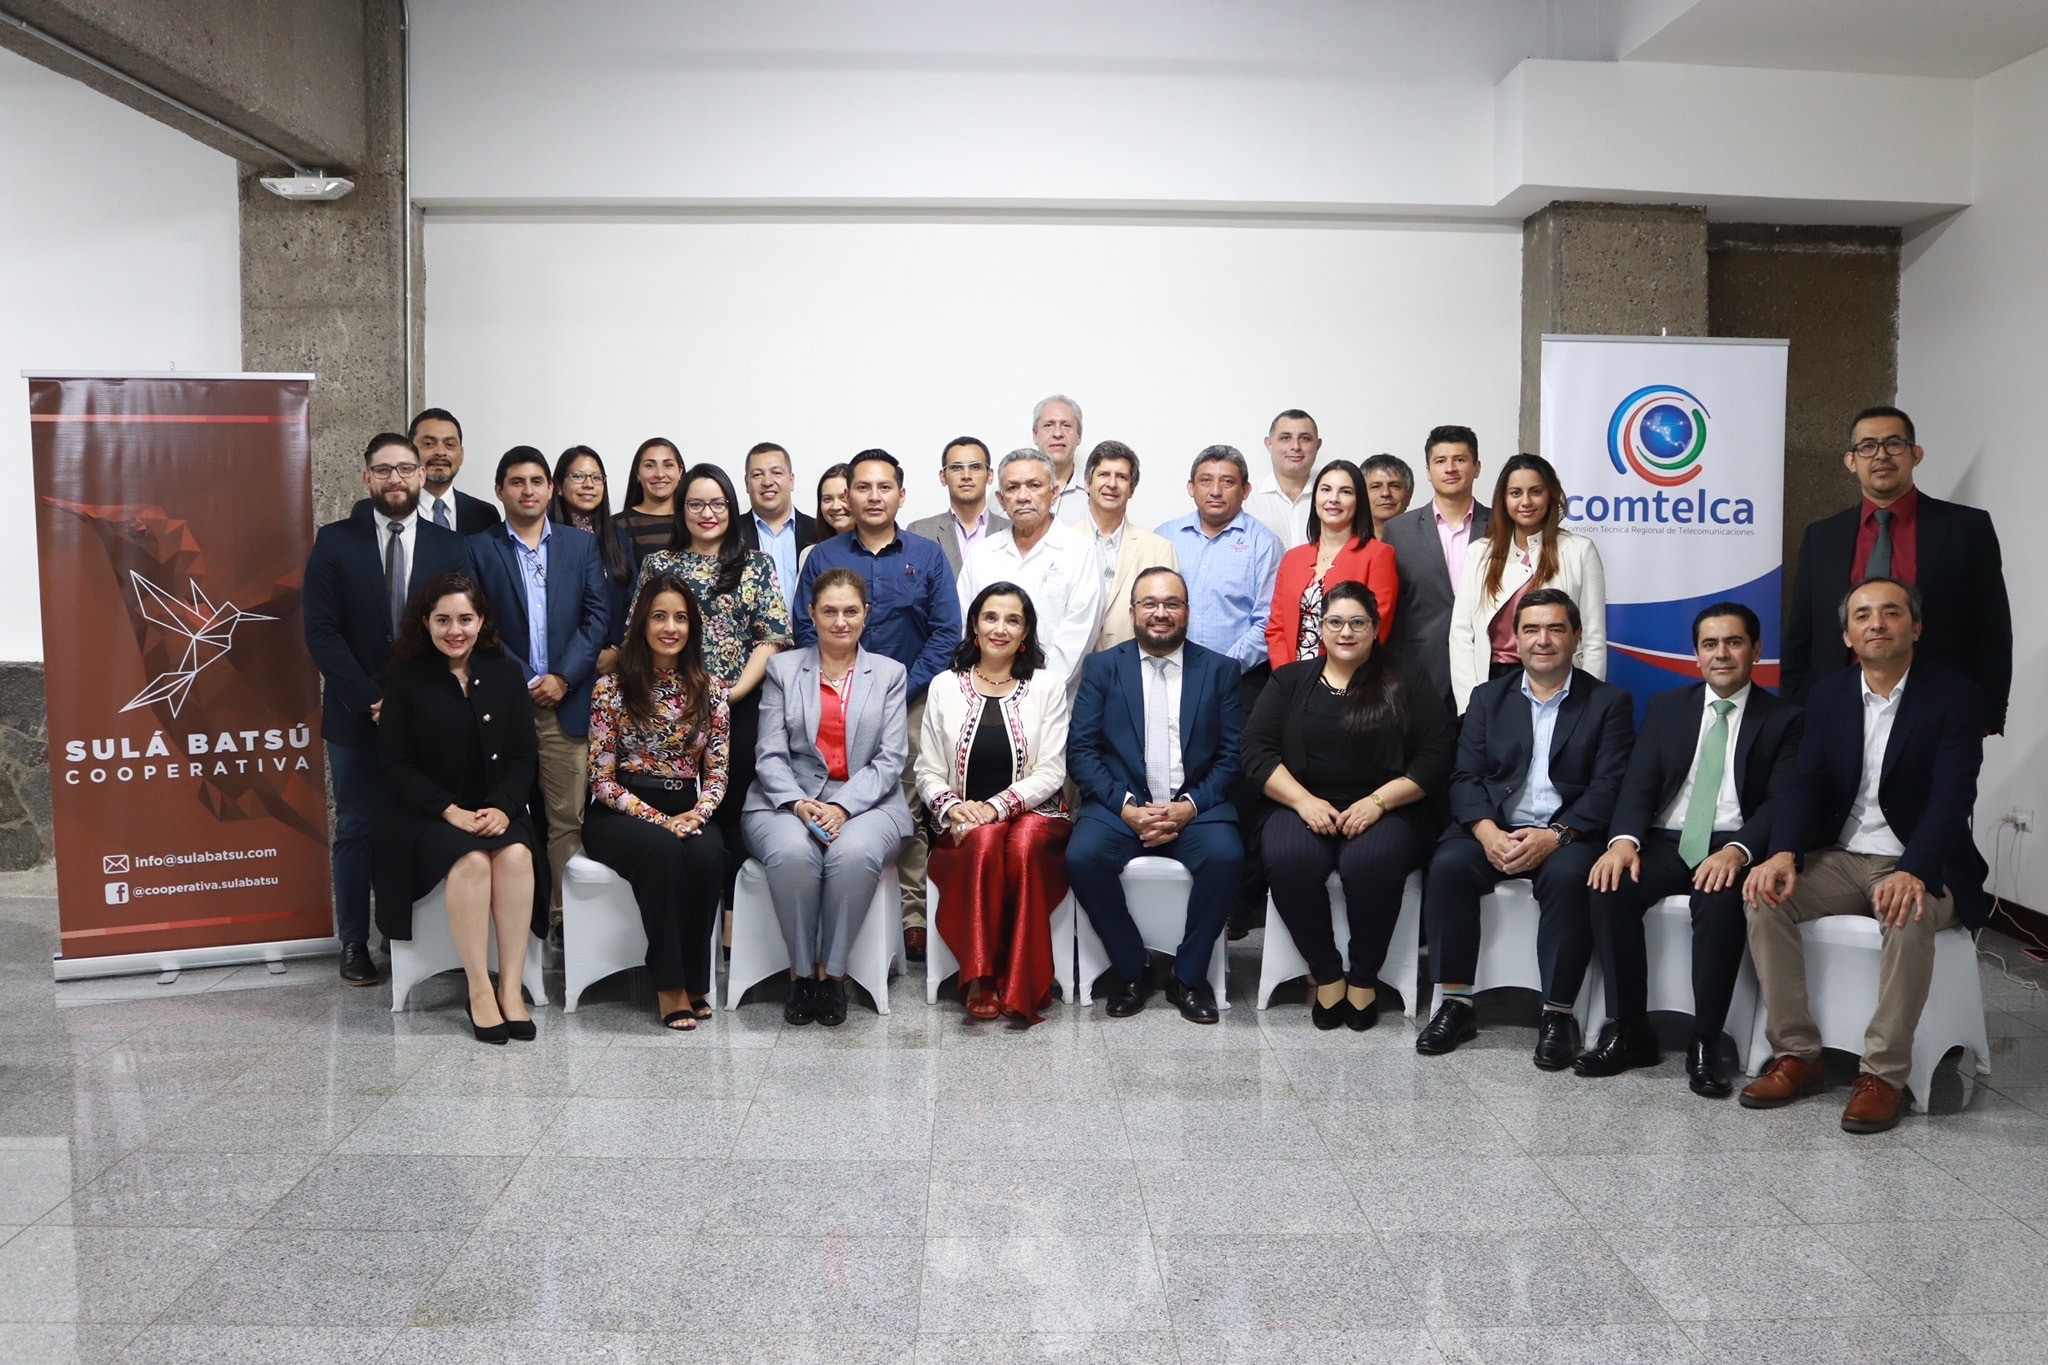 Taller en Costa Rica reflexiona sobre importancia de redes comunitarias en Latinoamérica